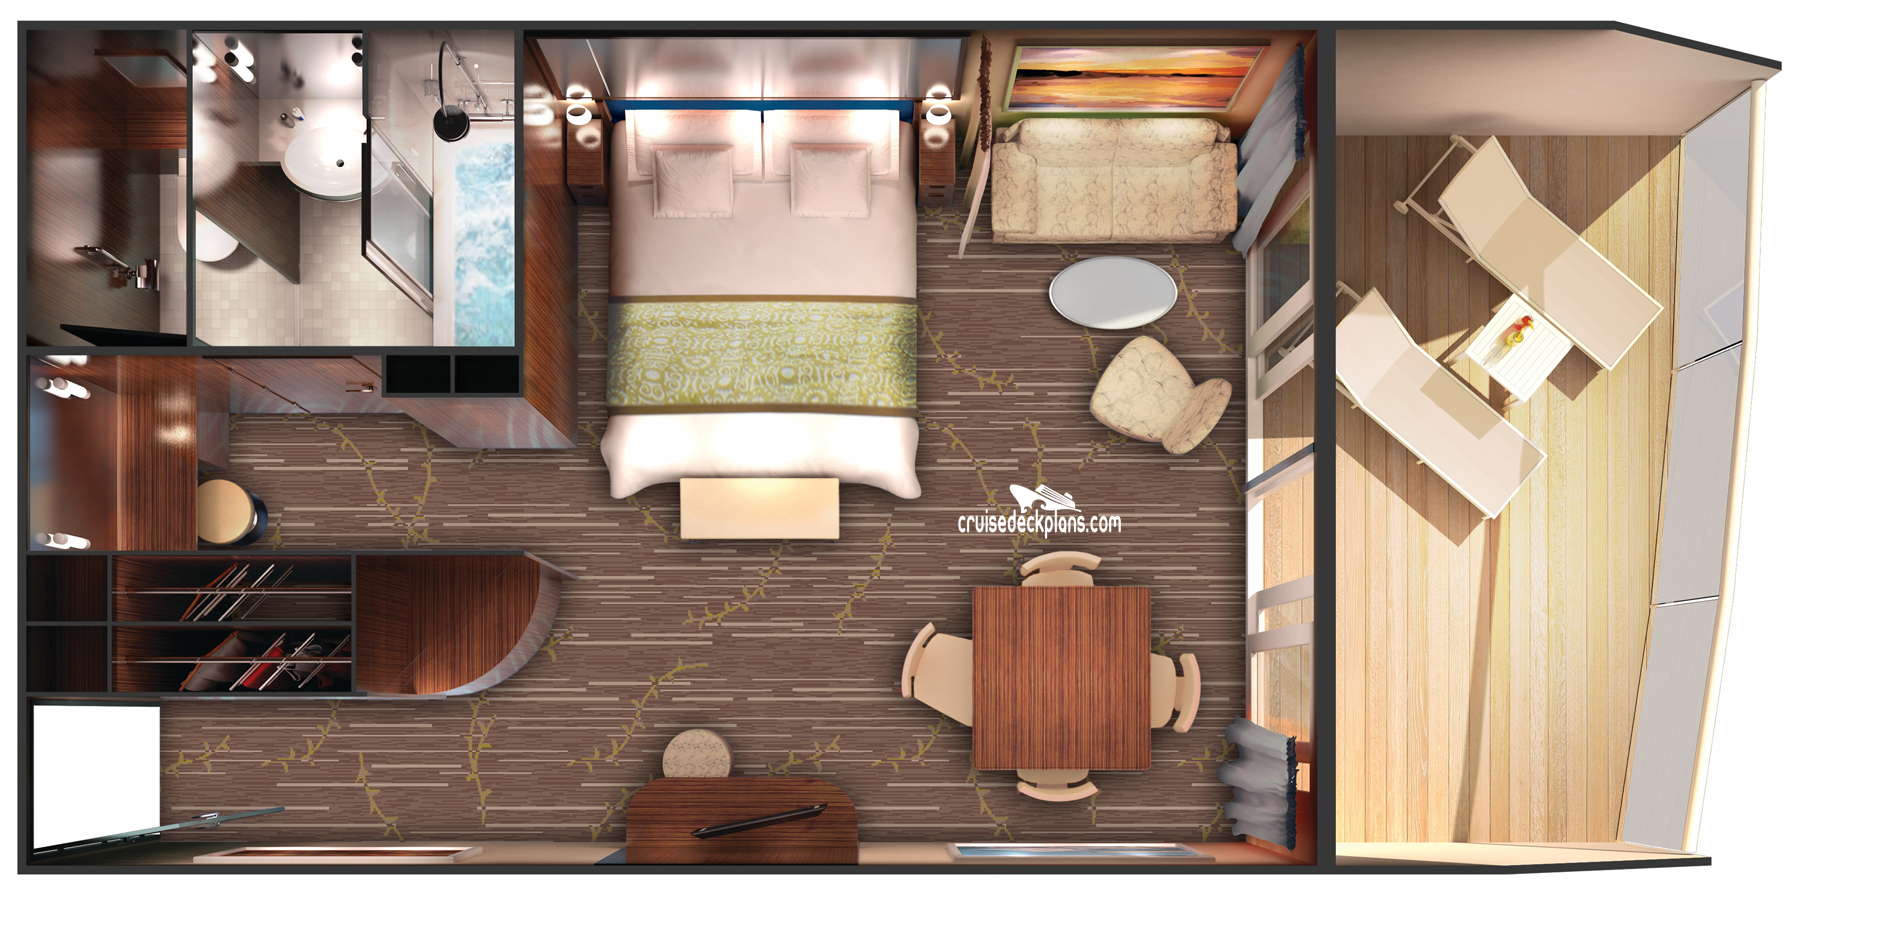 Norwegian Dawn Penthouse cabin floor plan